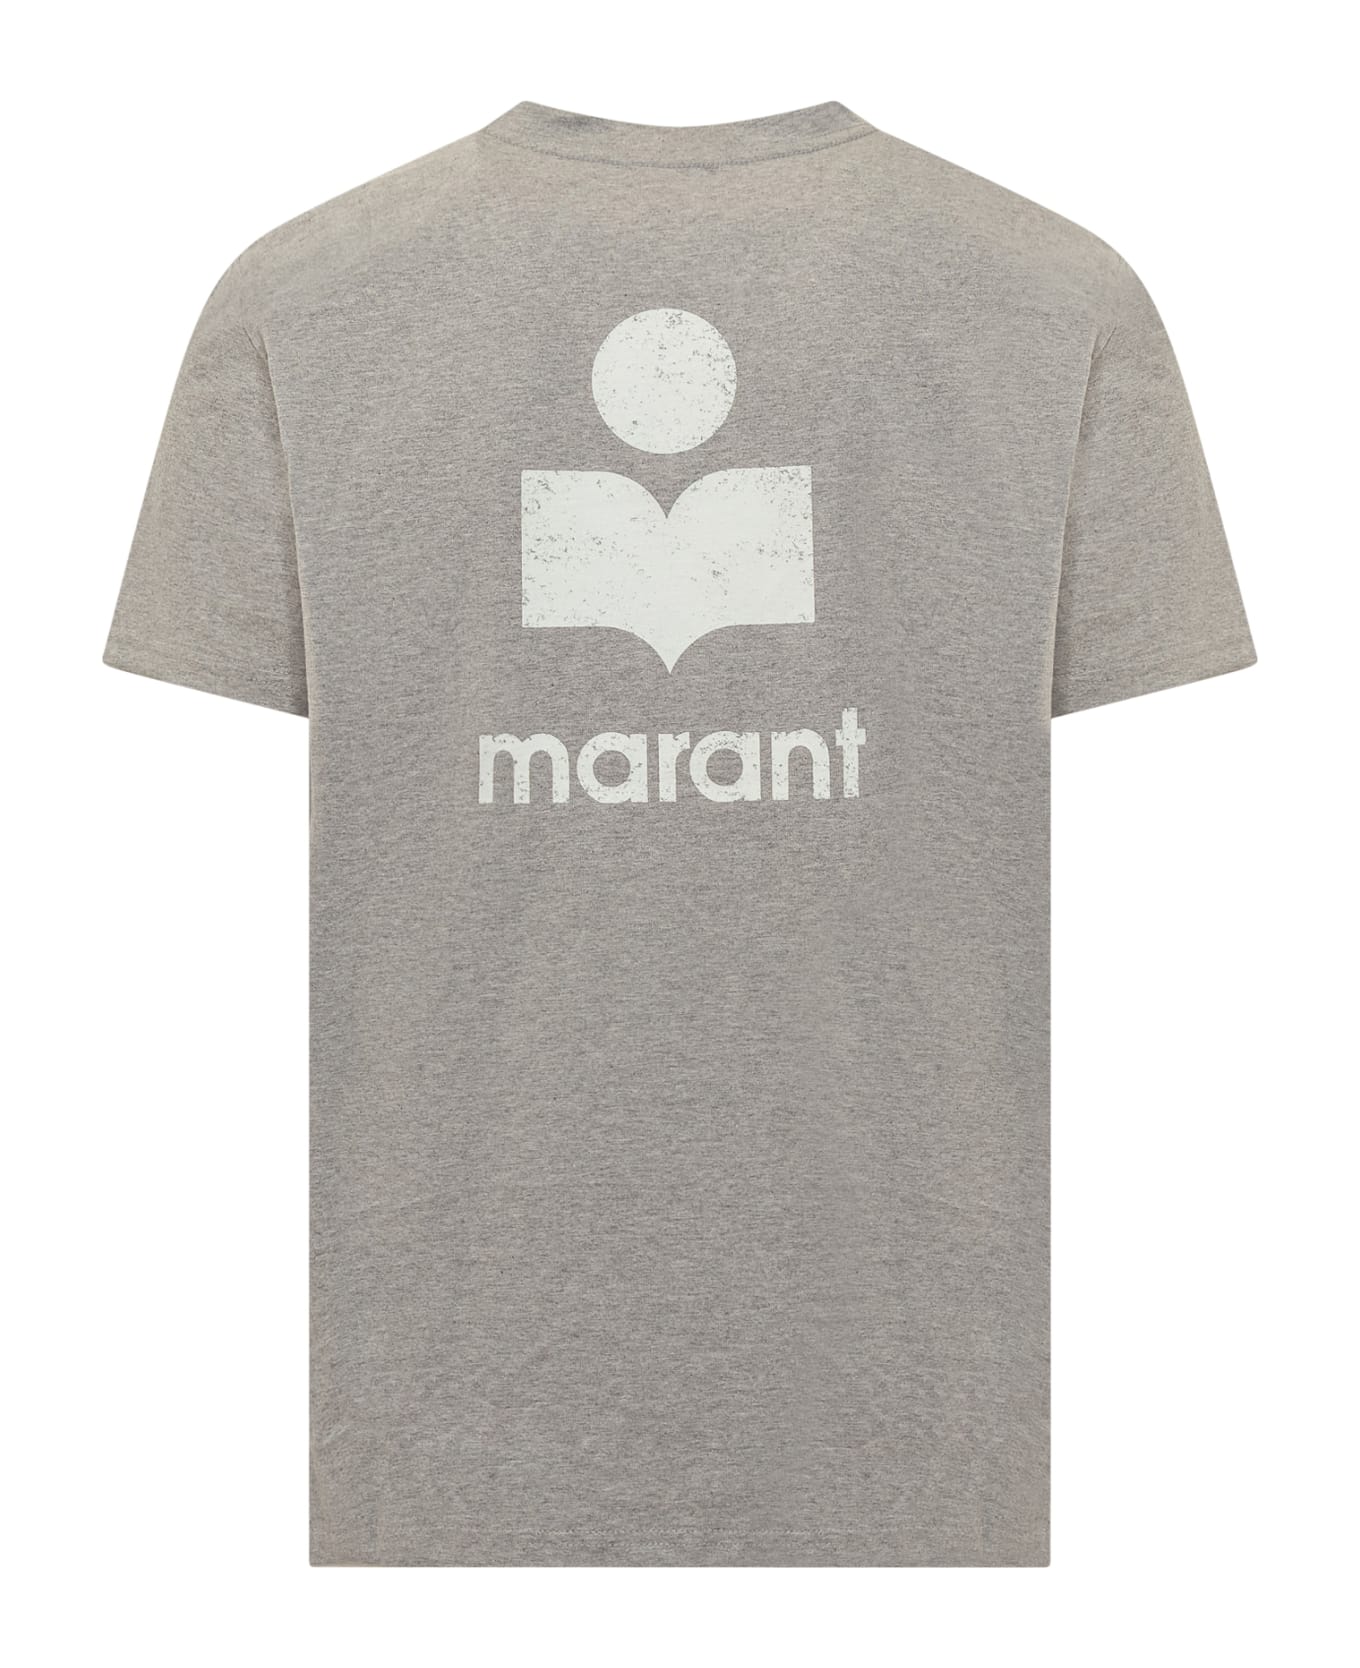 Isabel Marant Logo Printed Crewneck T-shirt - ECRU/GREY シャツ